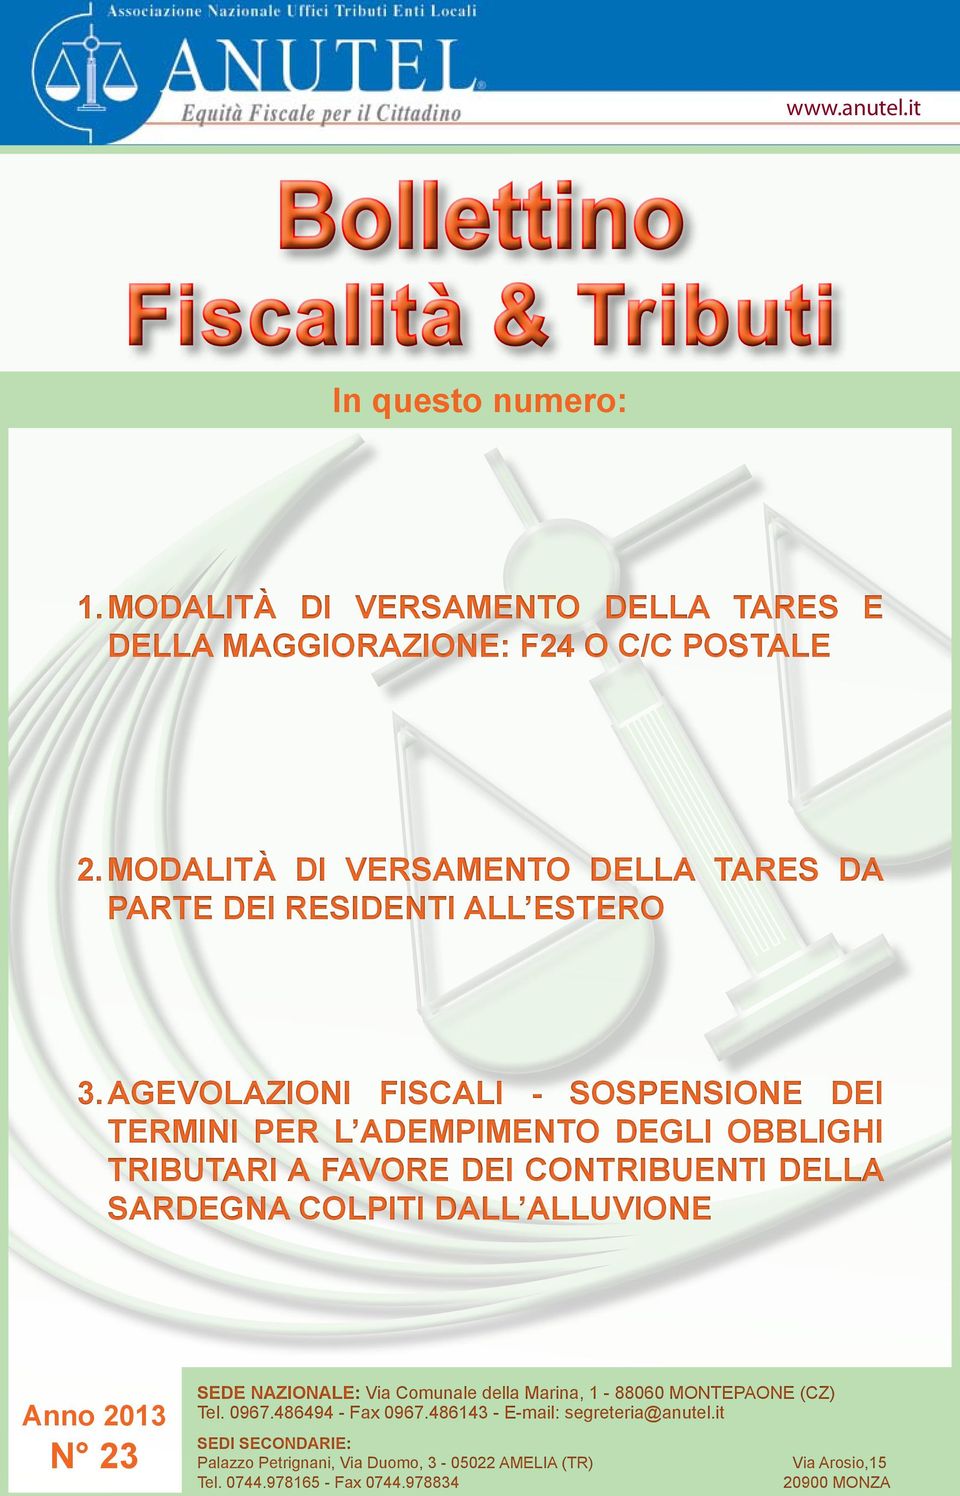 Agevolazioni fiscali - Sospensione dei termini per l adempimento degli obblighi tributari a favore dei contribuenti della Sardegna colpiti dall alluvione